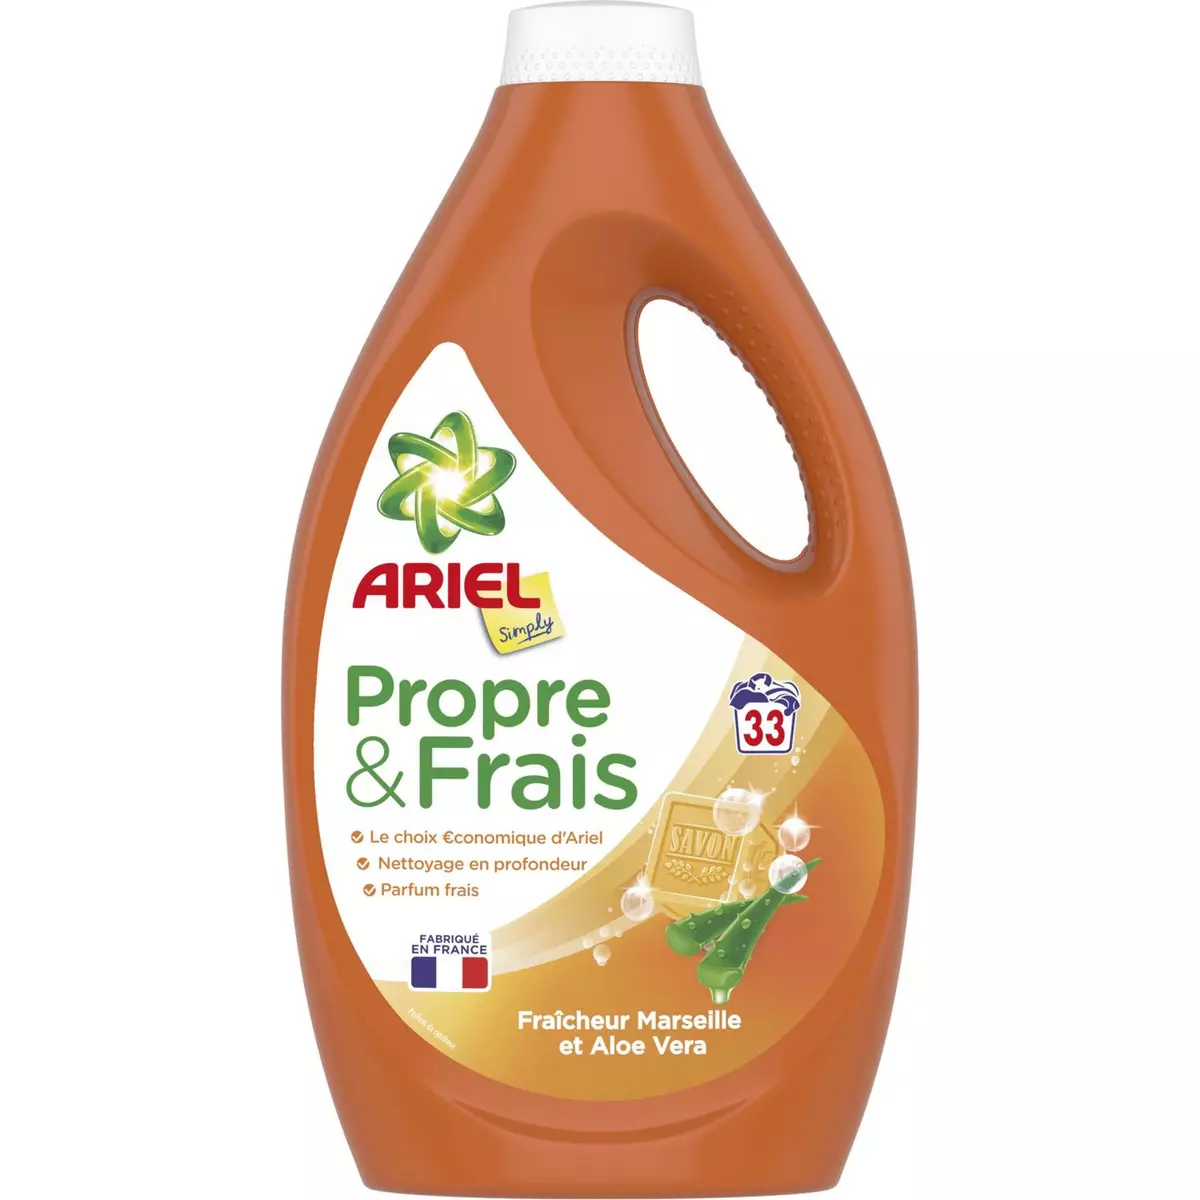 ARIEL Propre & Frais lessive liquide fraîcheur Marseille & aloe vera 33 lavages 1,8l